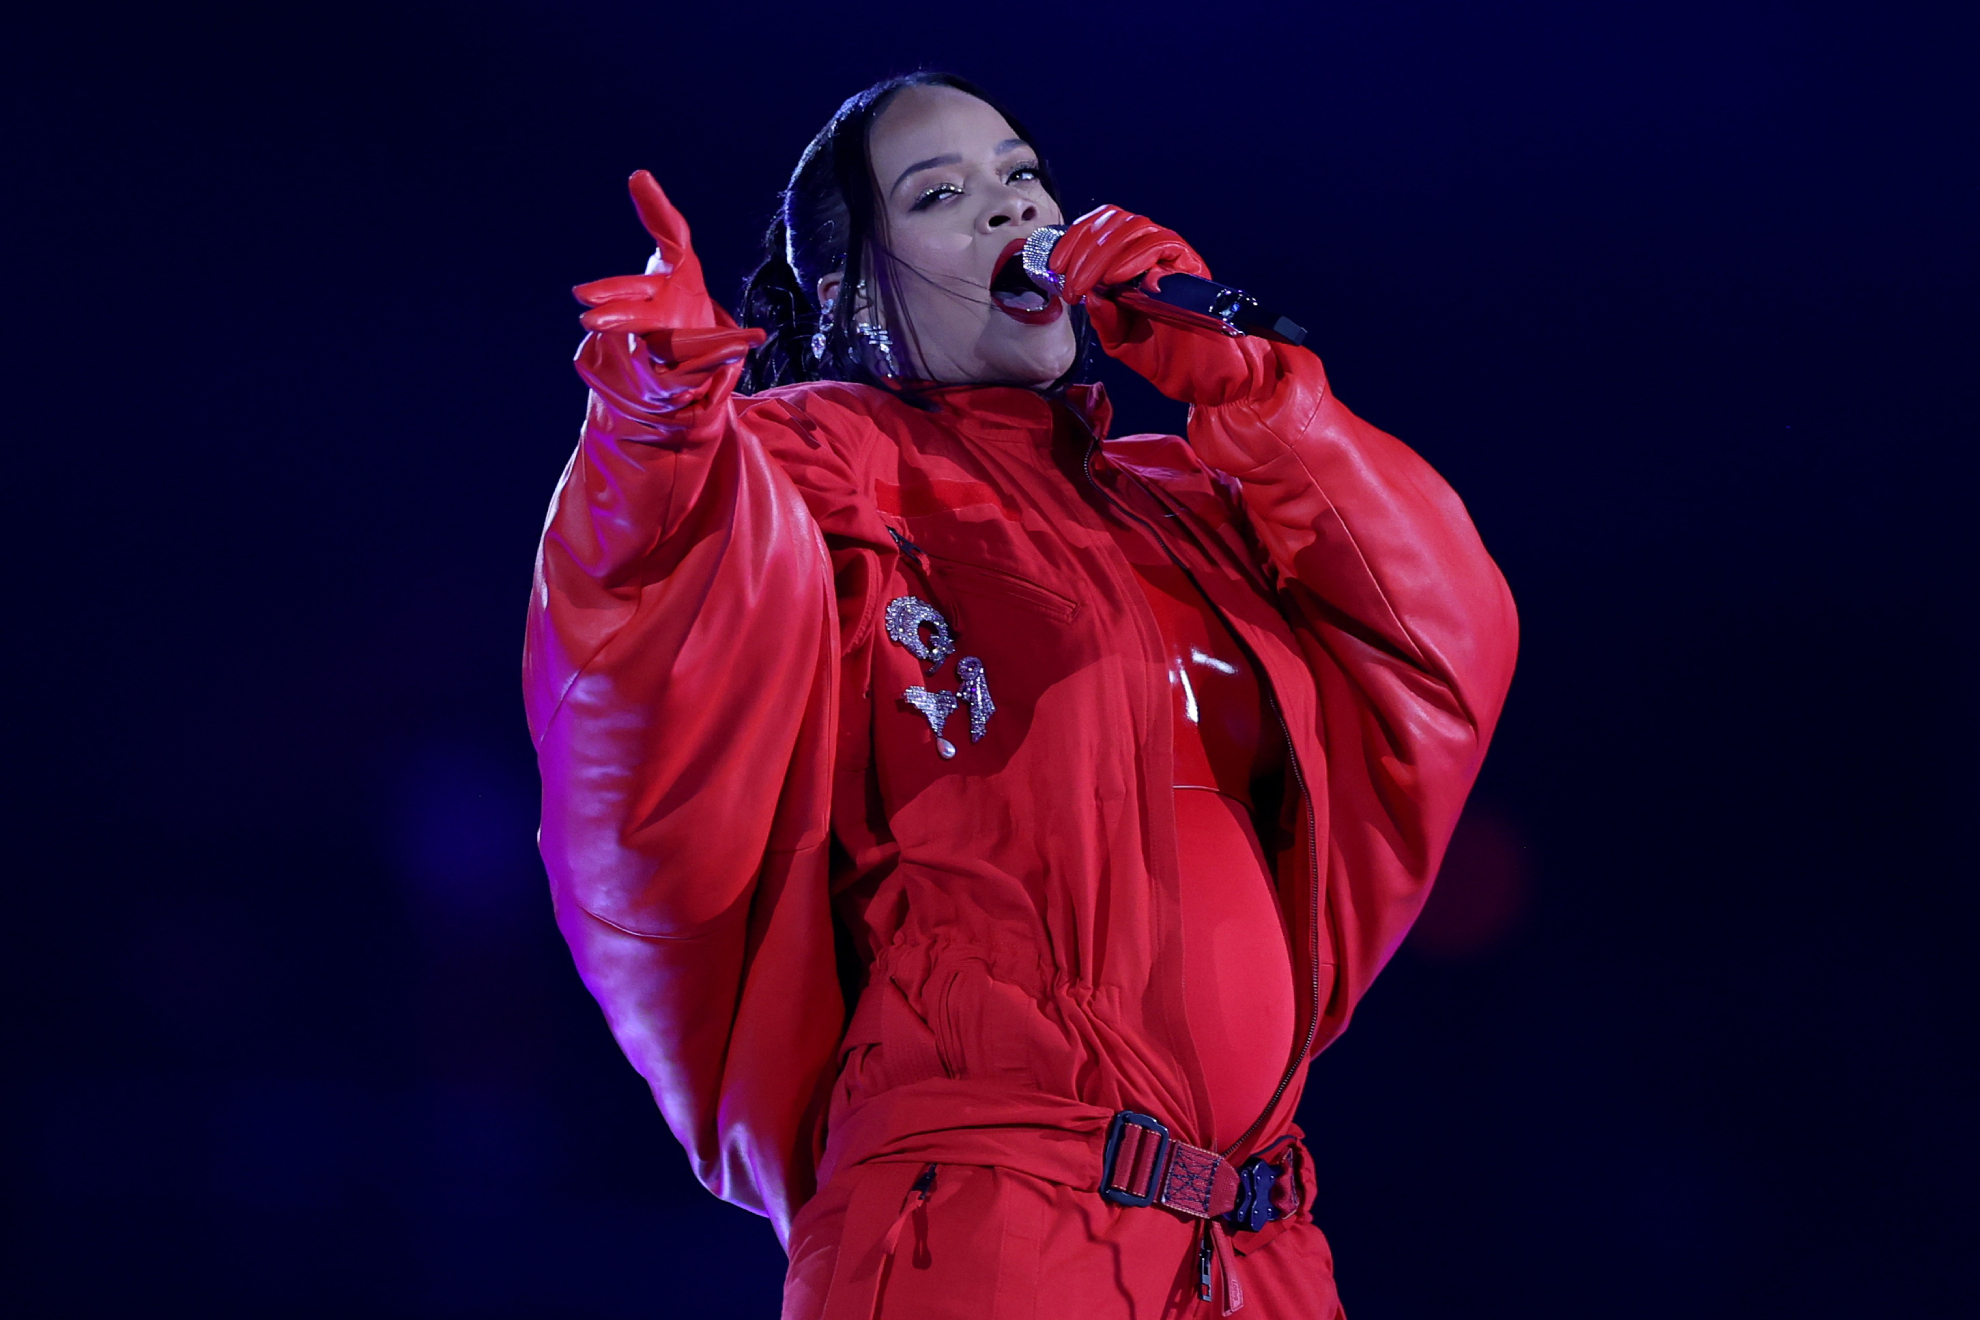 Seis aos despus, Rihanna vuelve a reinar: espectacular show 'areo' en la Super Bowl!